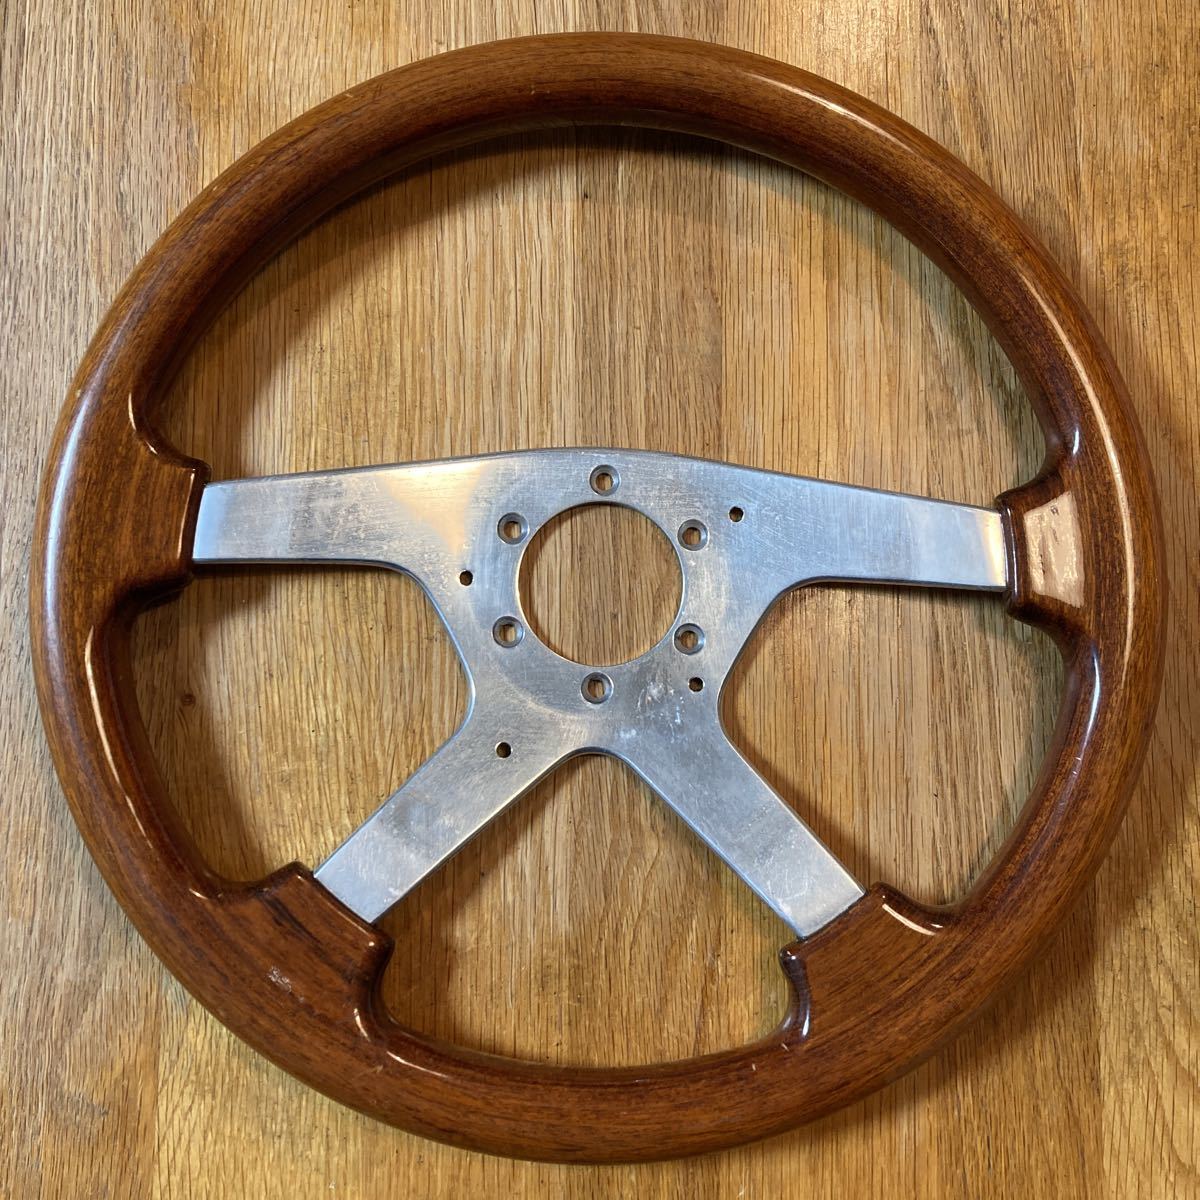 MOMO ASTRA Wood Steering wheel モモ アストラ ウッド 木目 ステアリング ハンドル φ36cm イタリア製  1994年5月製造